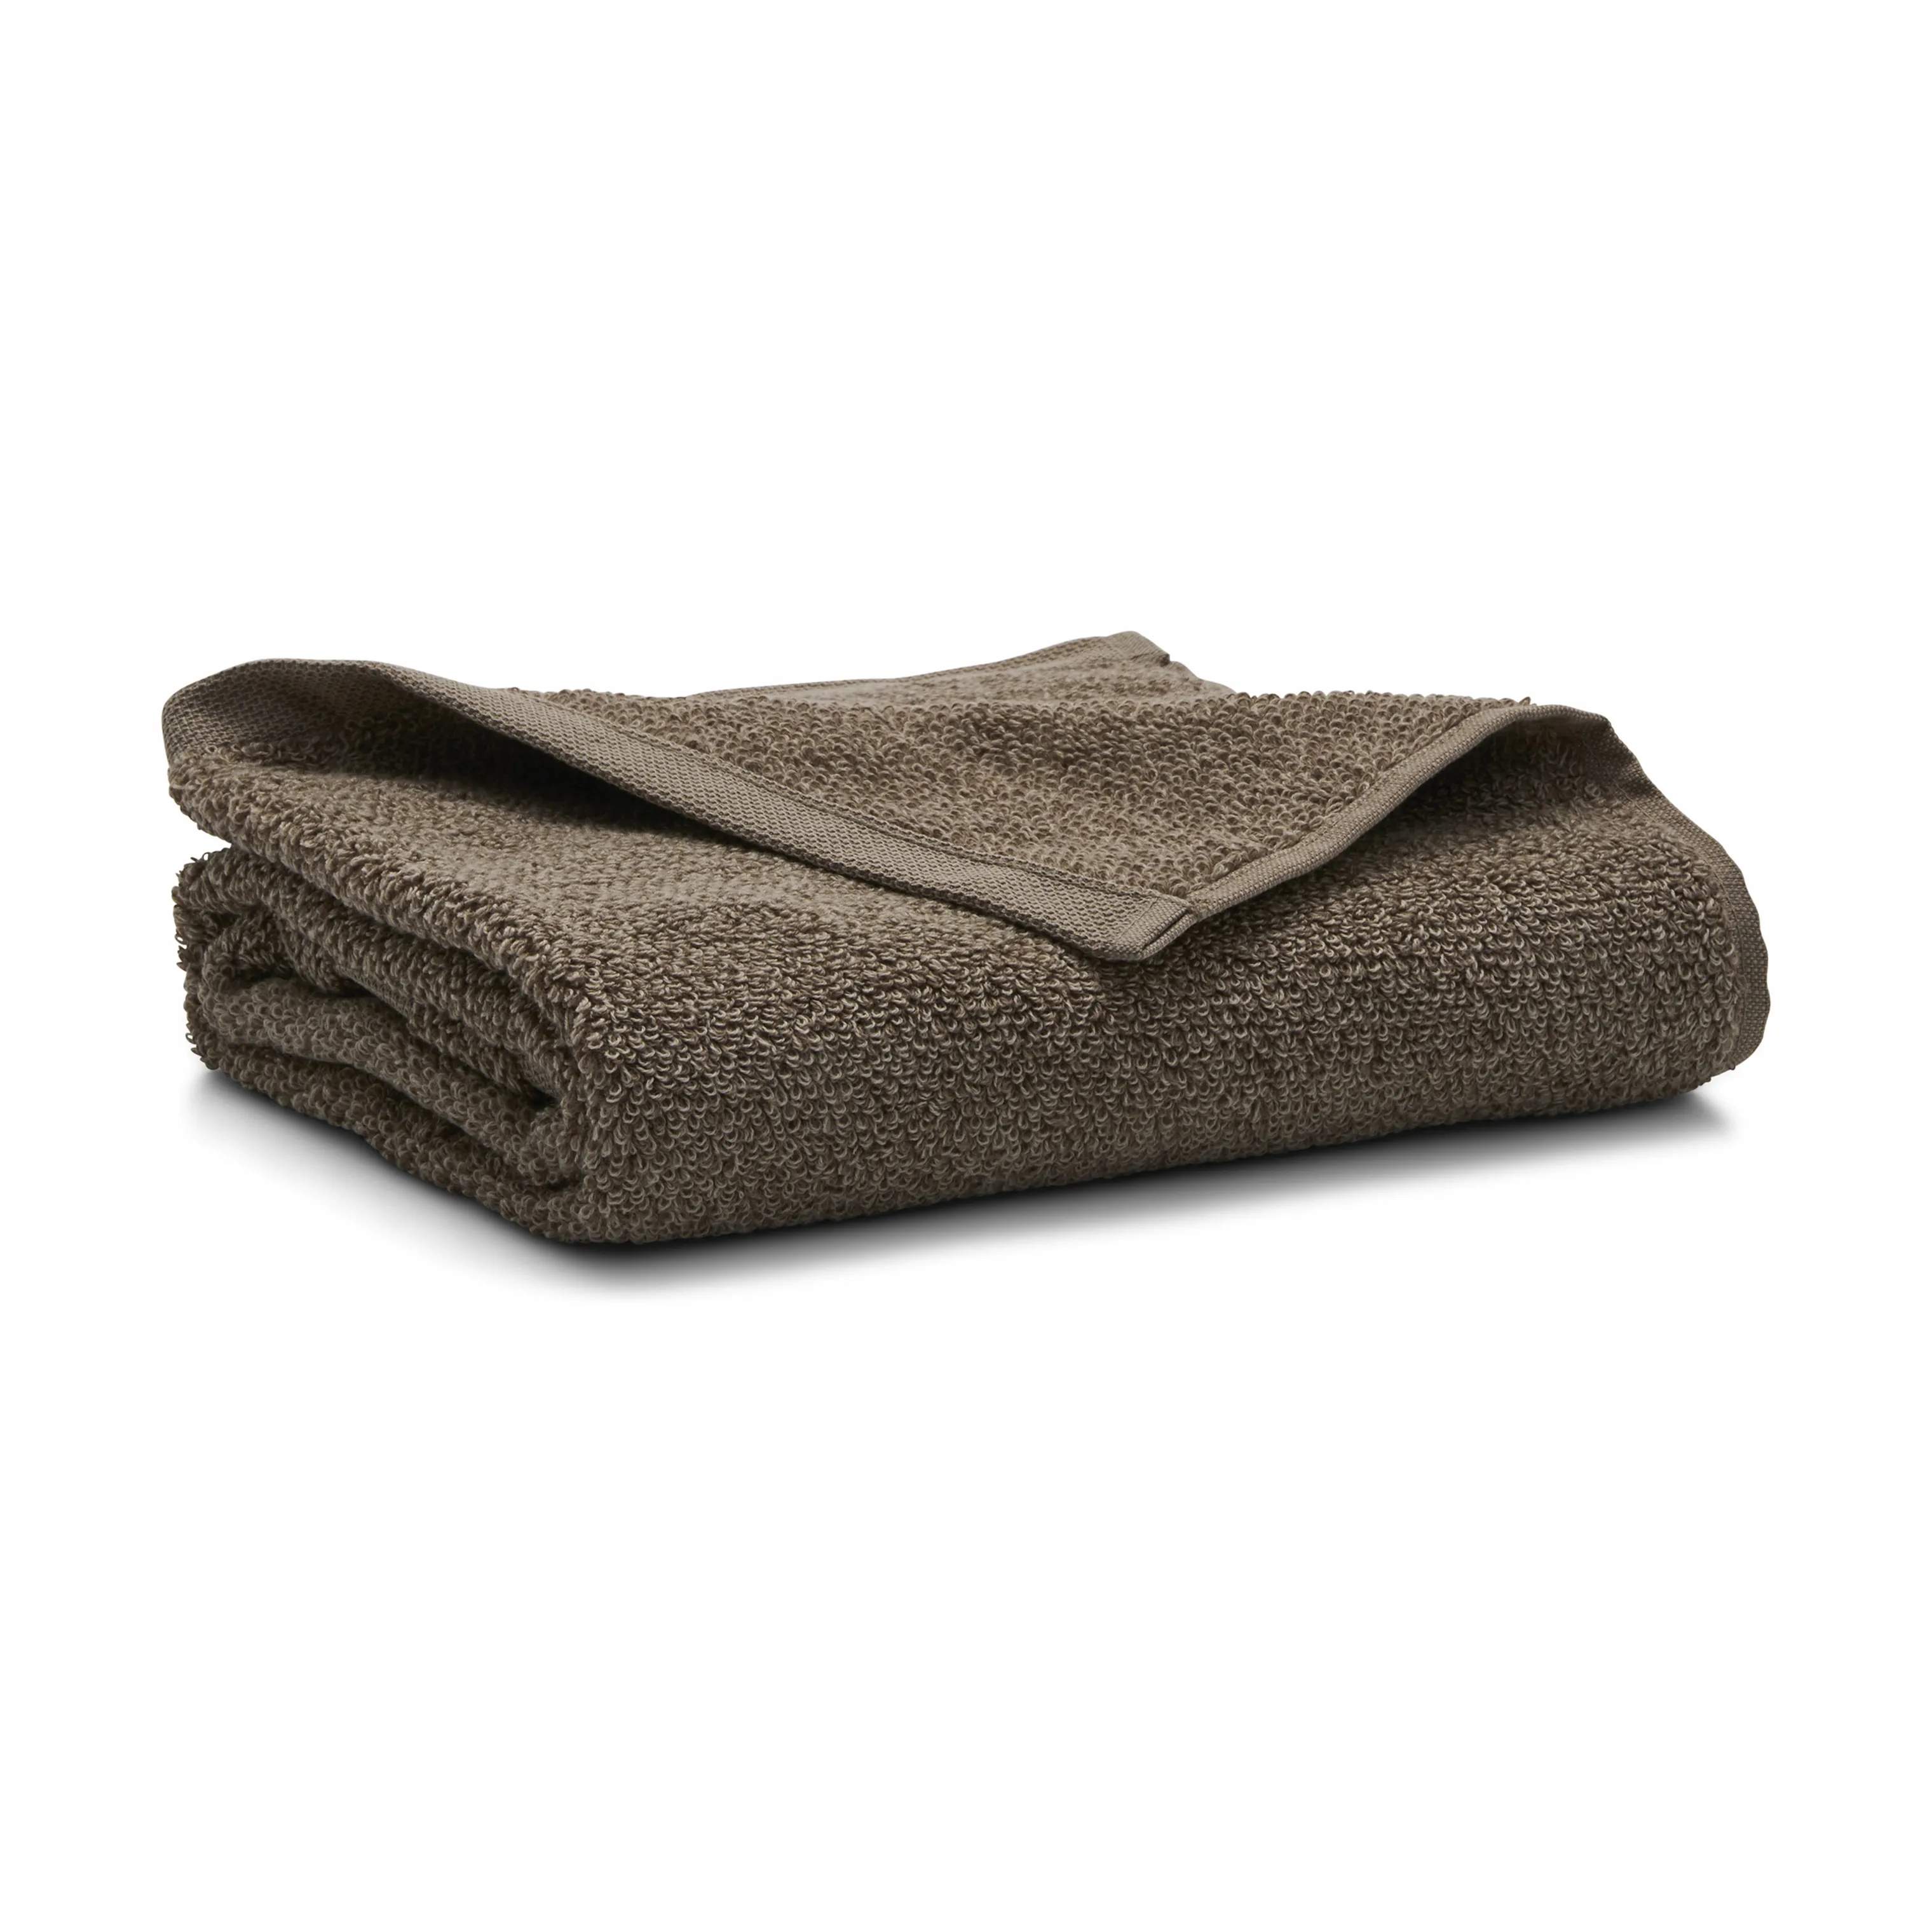 Melange Håndklæde -, beige/clay, large